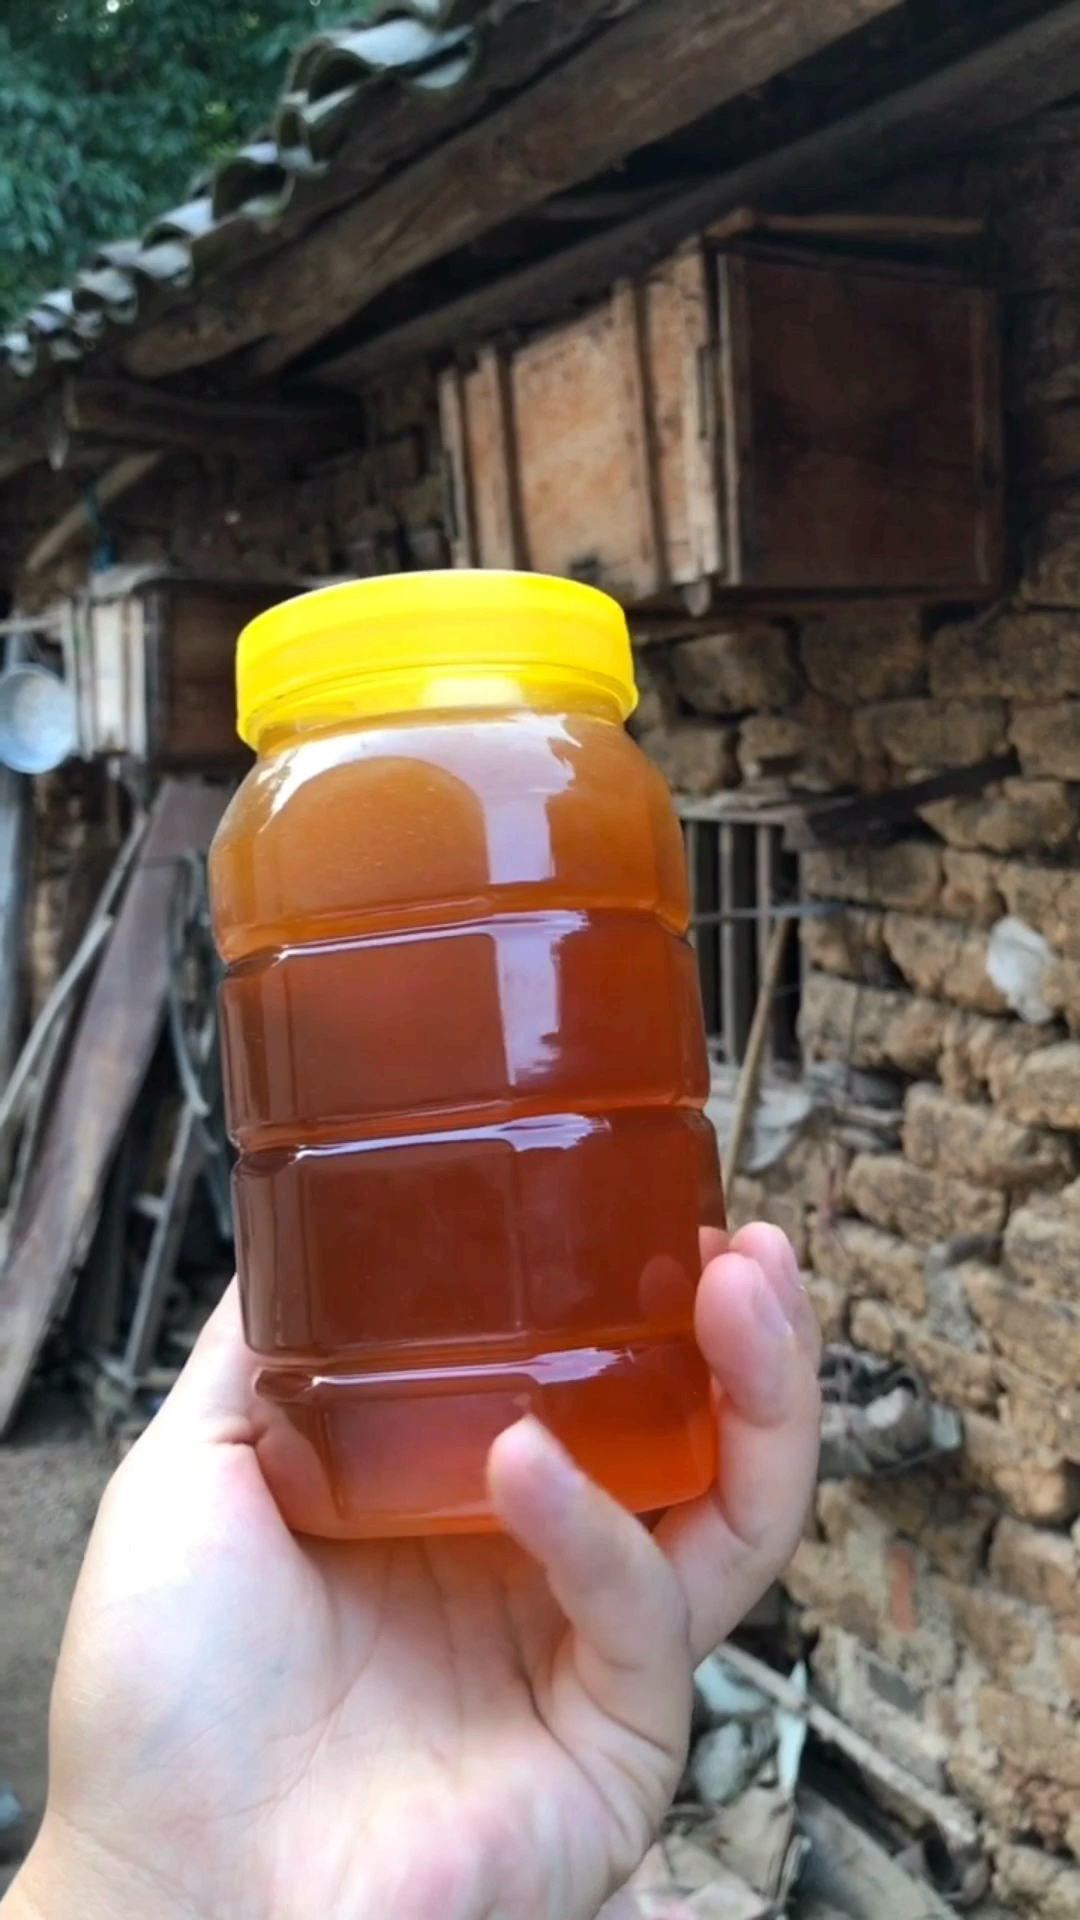 在山里伯伯家里取的野生土蜂蜜,品质非常好